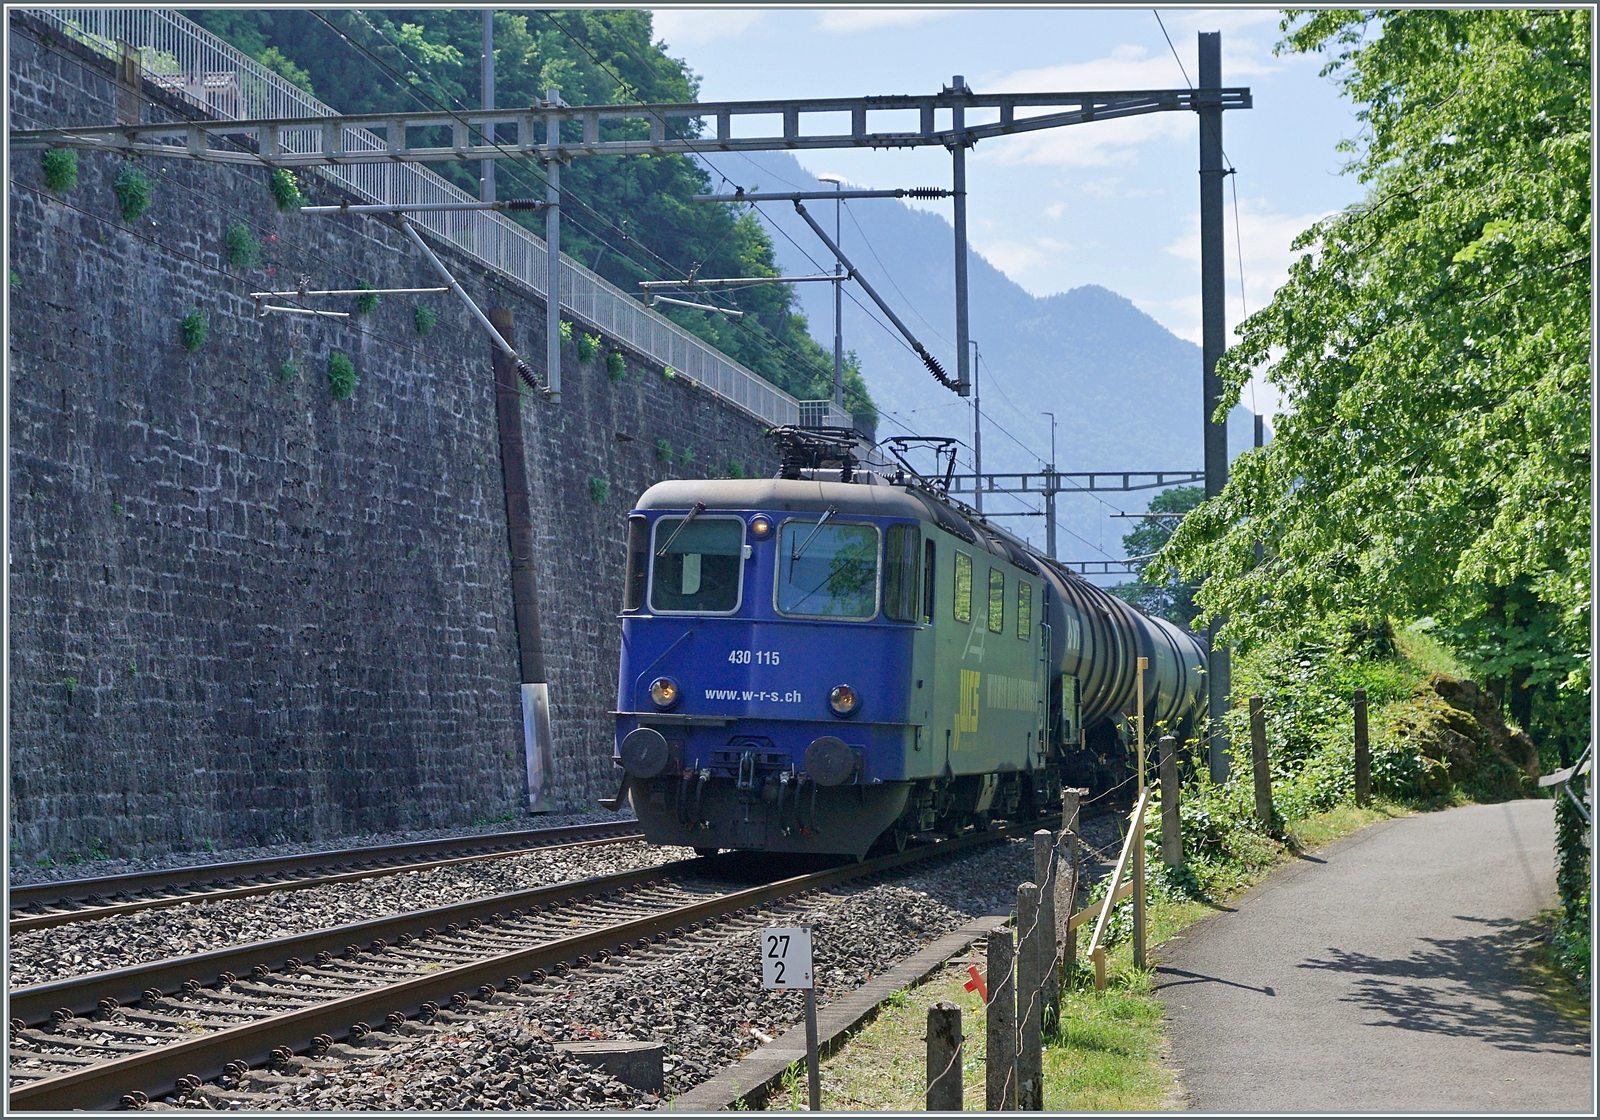 Die ehemalige SMB Re 4/4 181 ist heute als WRD Re 430 115 unterwegs; beim Château de Chillon im ungünstigen Gegenlicht auf der Fahrt in Richtung Lausanne. 

31. Mai 2023